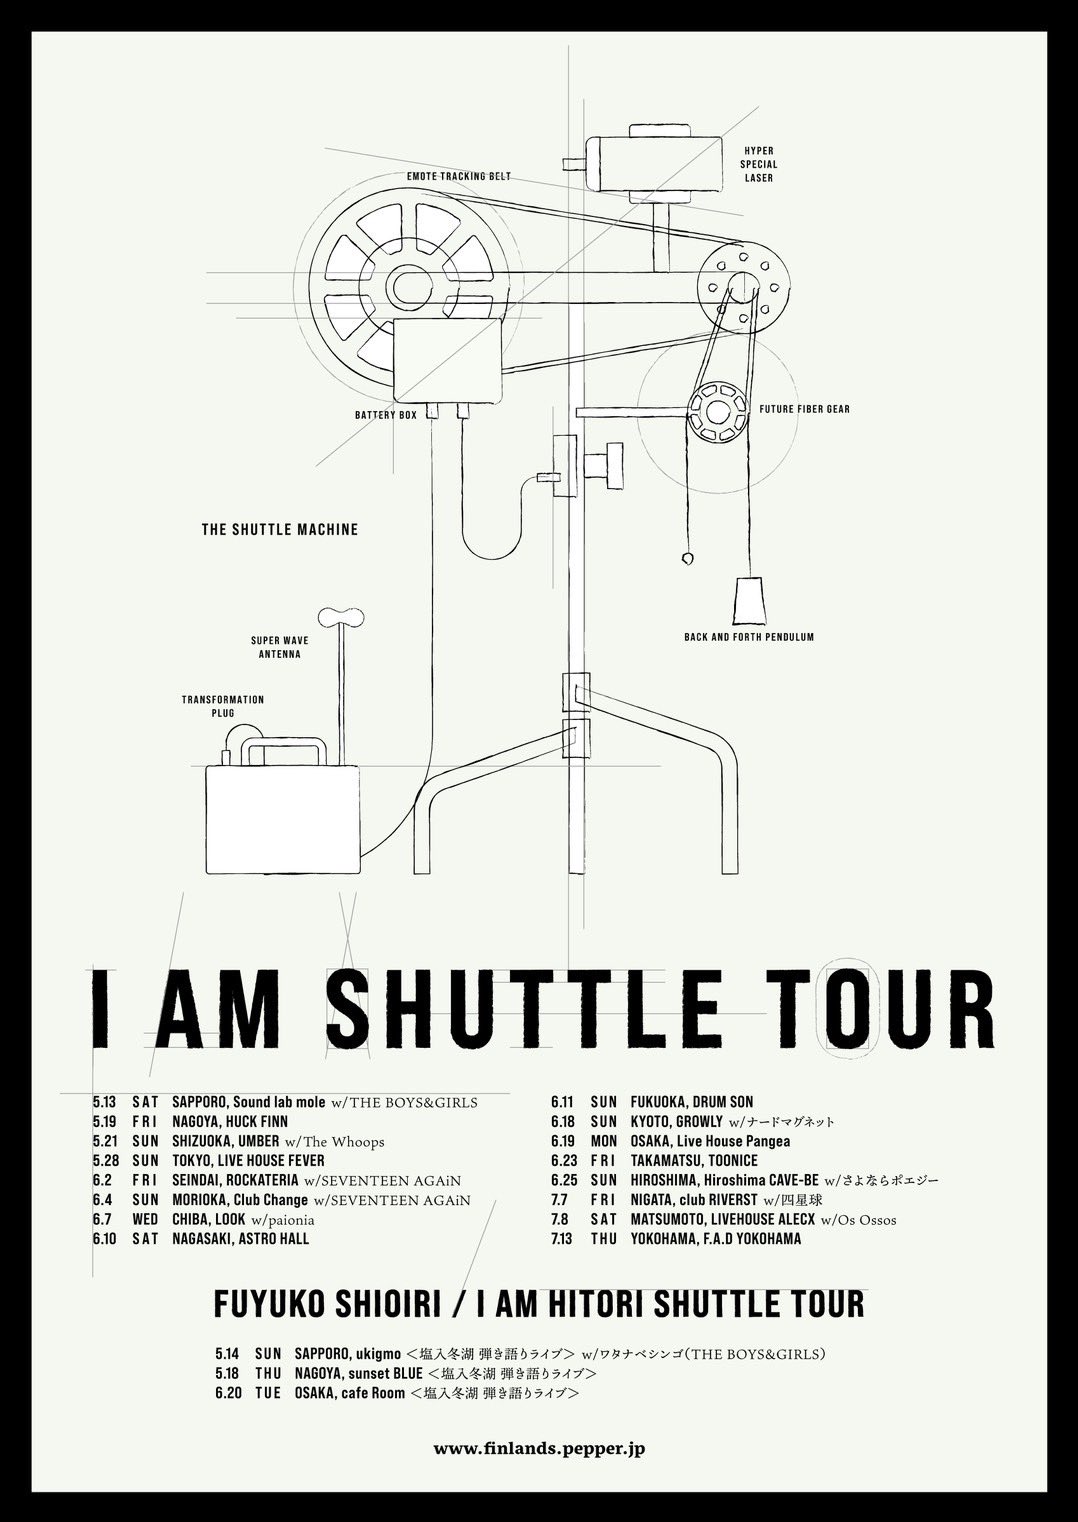 FINLANDS 「I AM SHUTTLE TOUR」